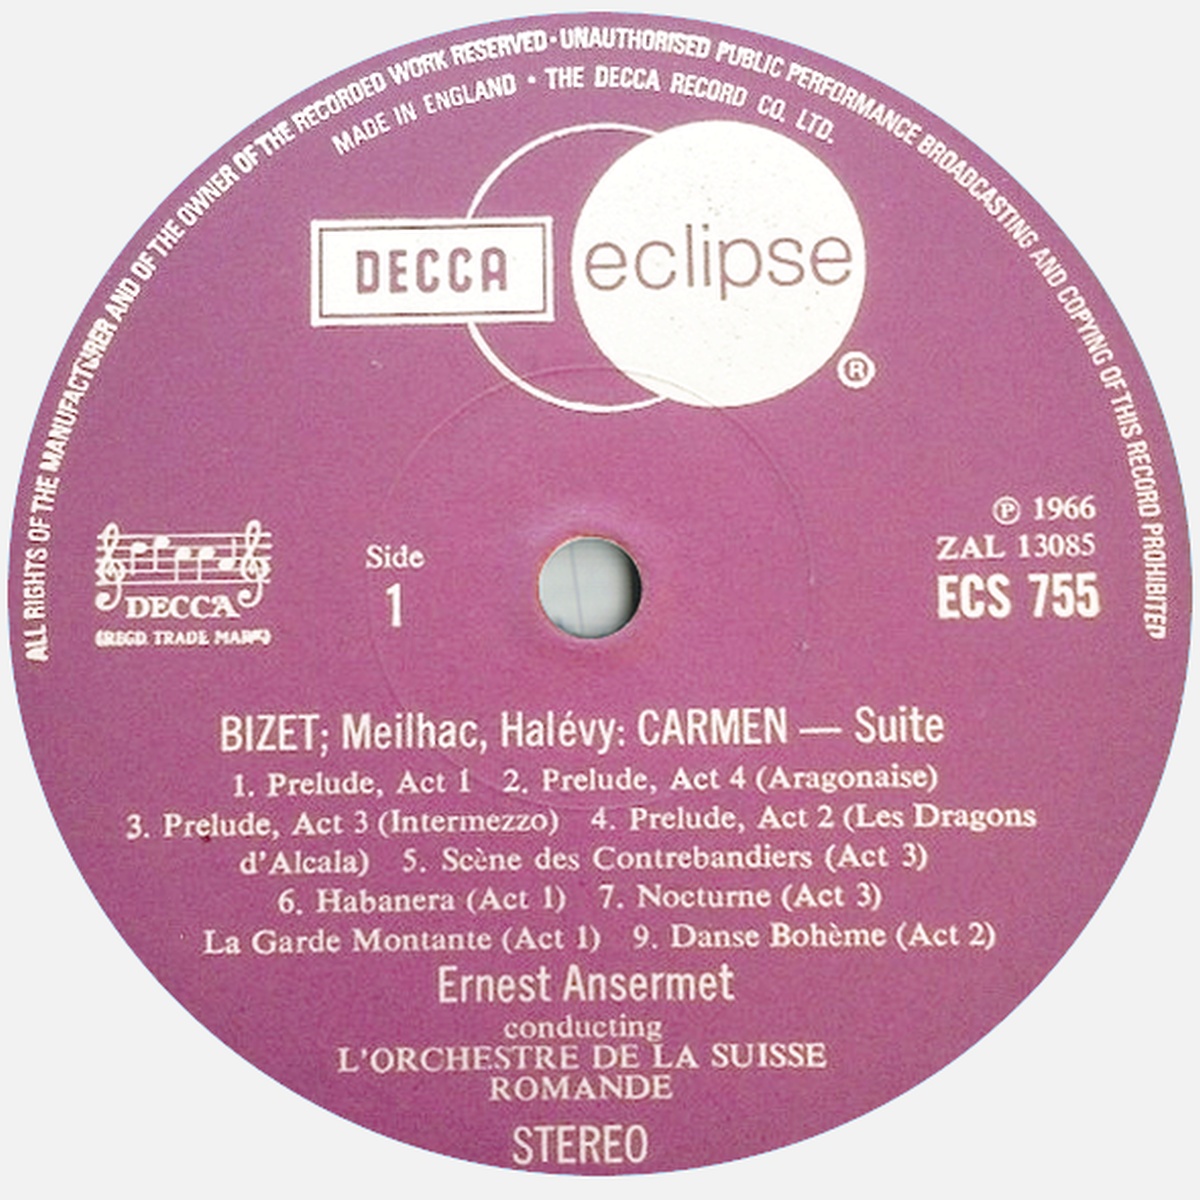 Étiquette recto Decca Eclipse ECS 755, cliquer pour une vue agrandie